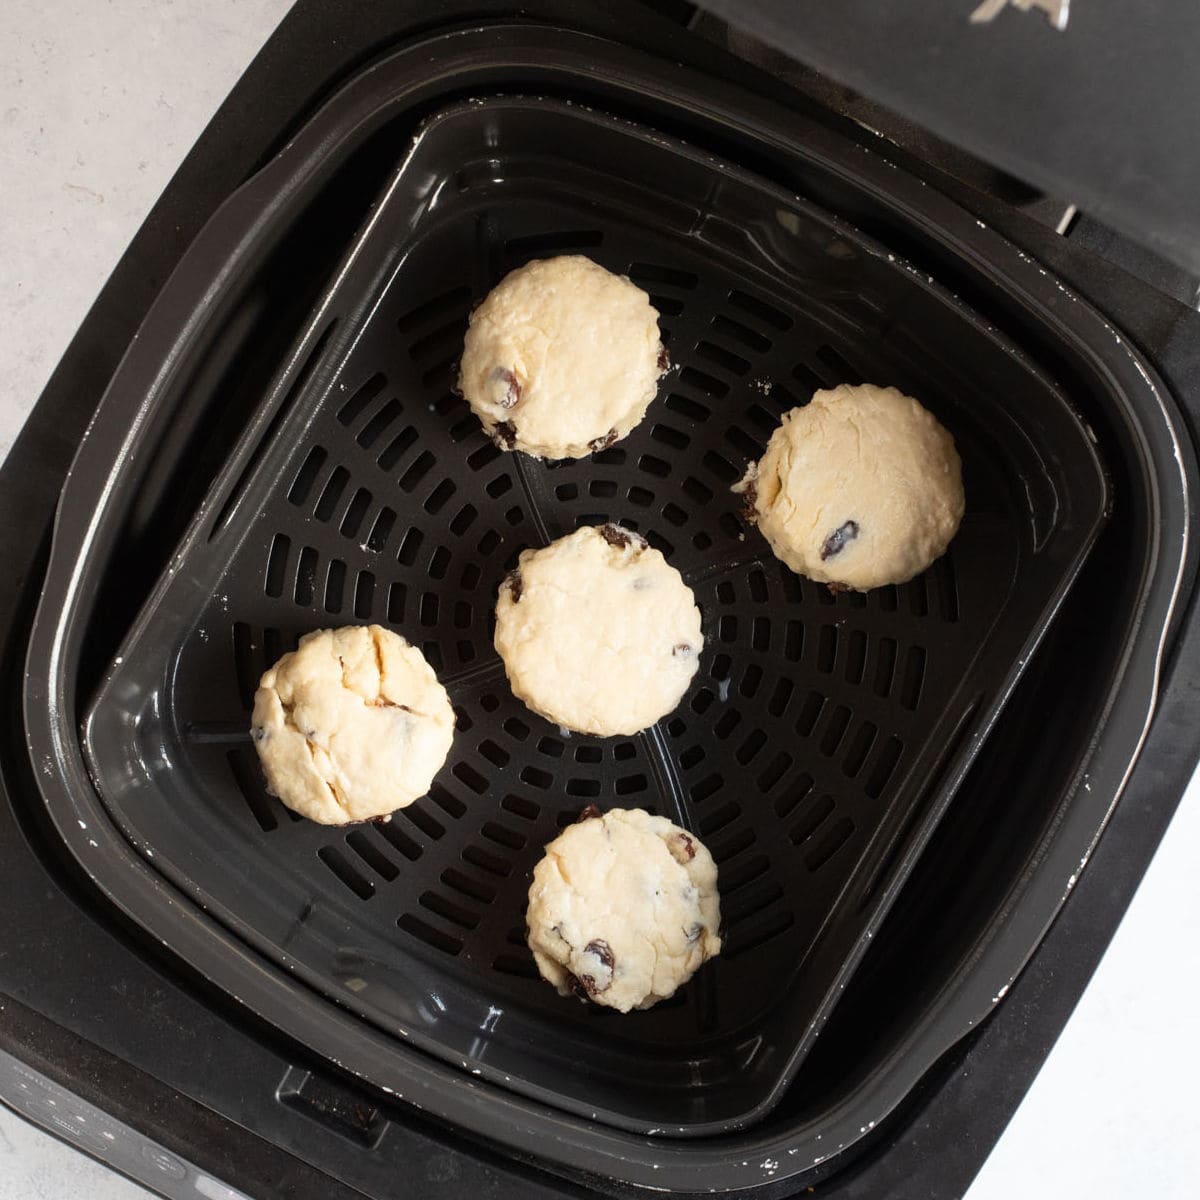 Unbaked scones in air fryer.